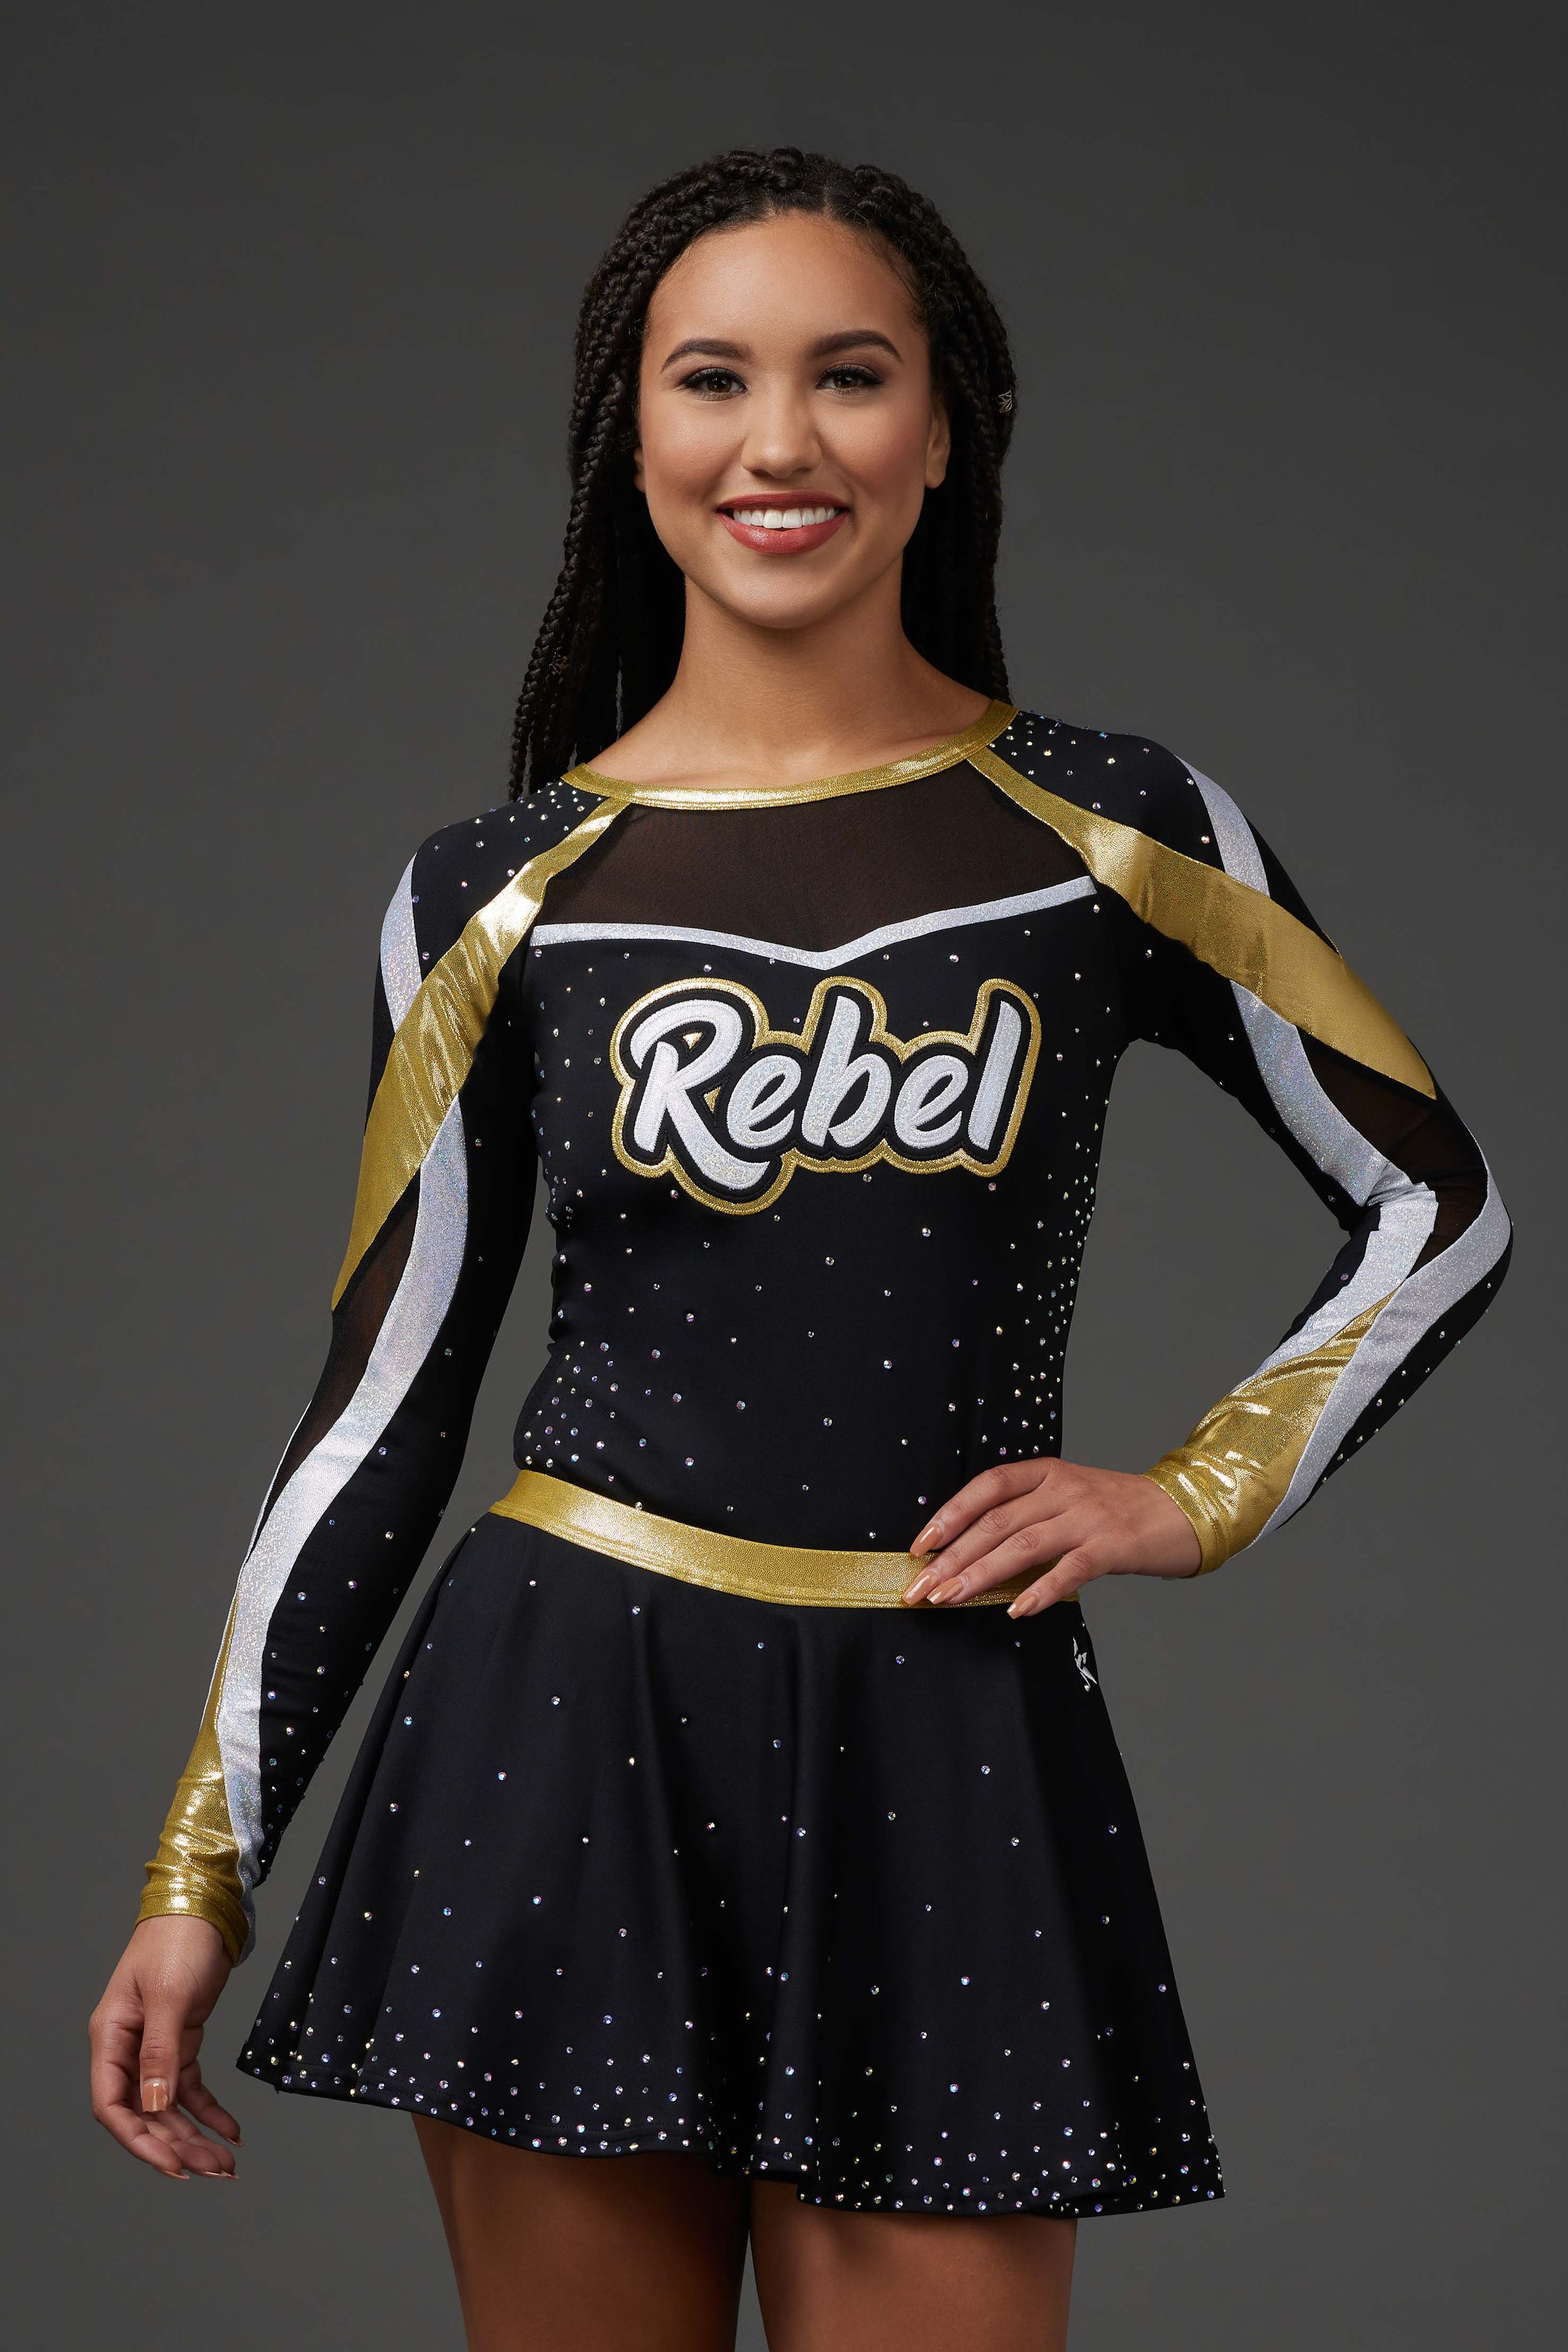 Allstar Cheer Uniforms from Rebel Athletic